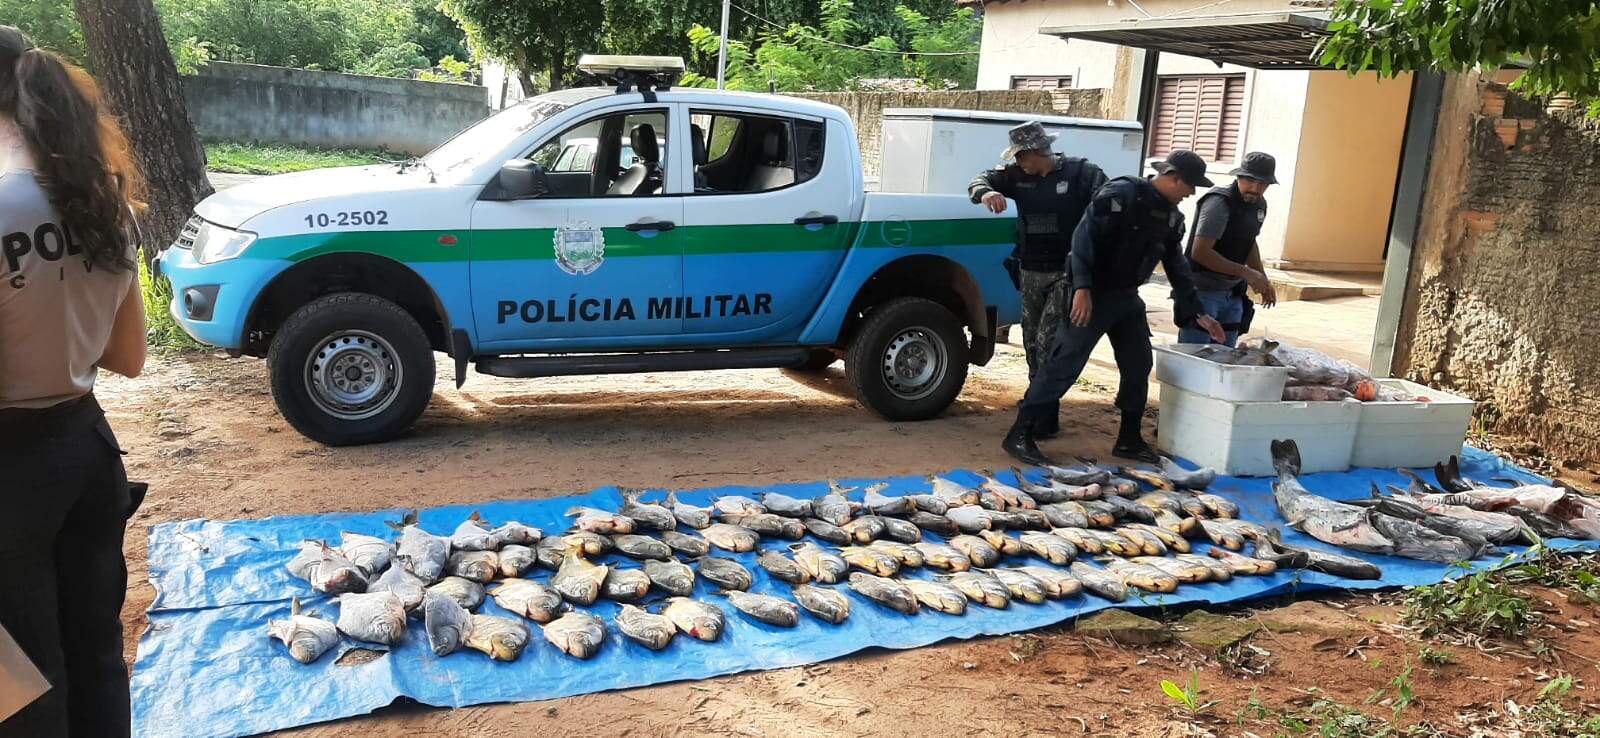 Em ação conjunta, polícias apreendem mais de 100 pescados irregulares